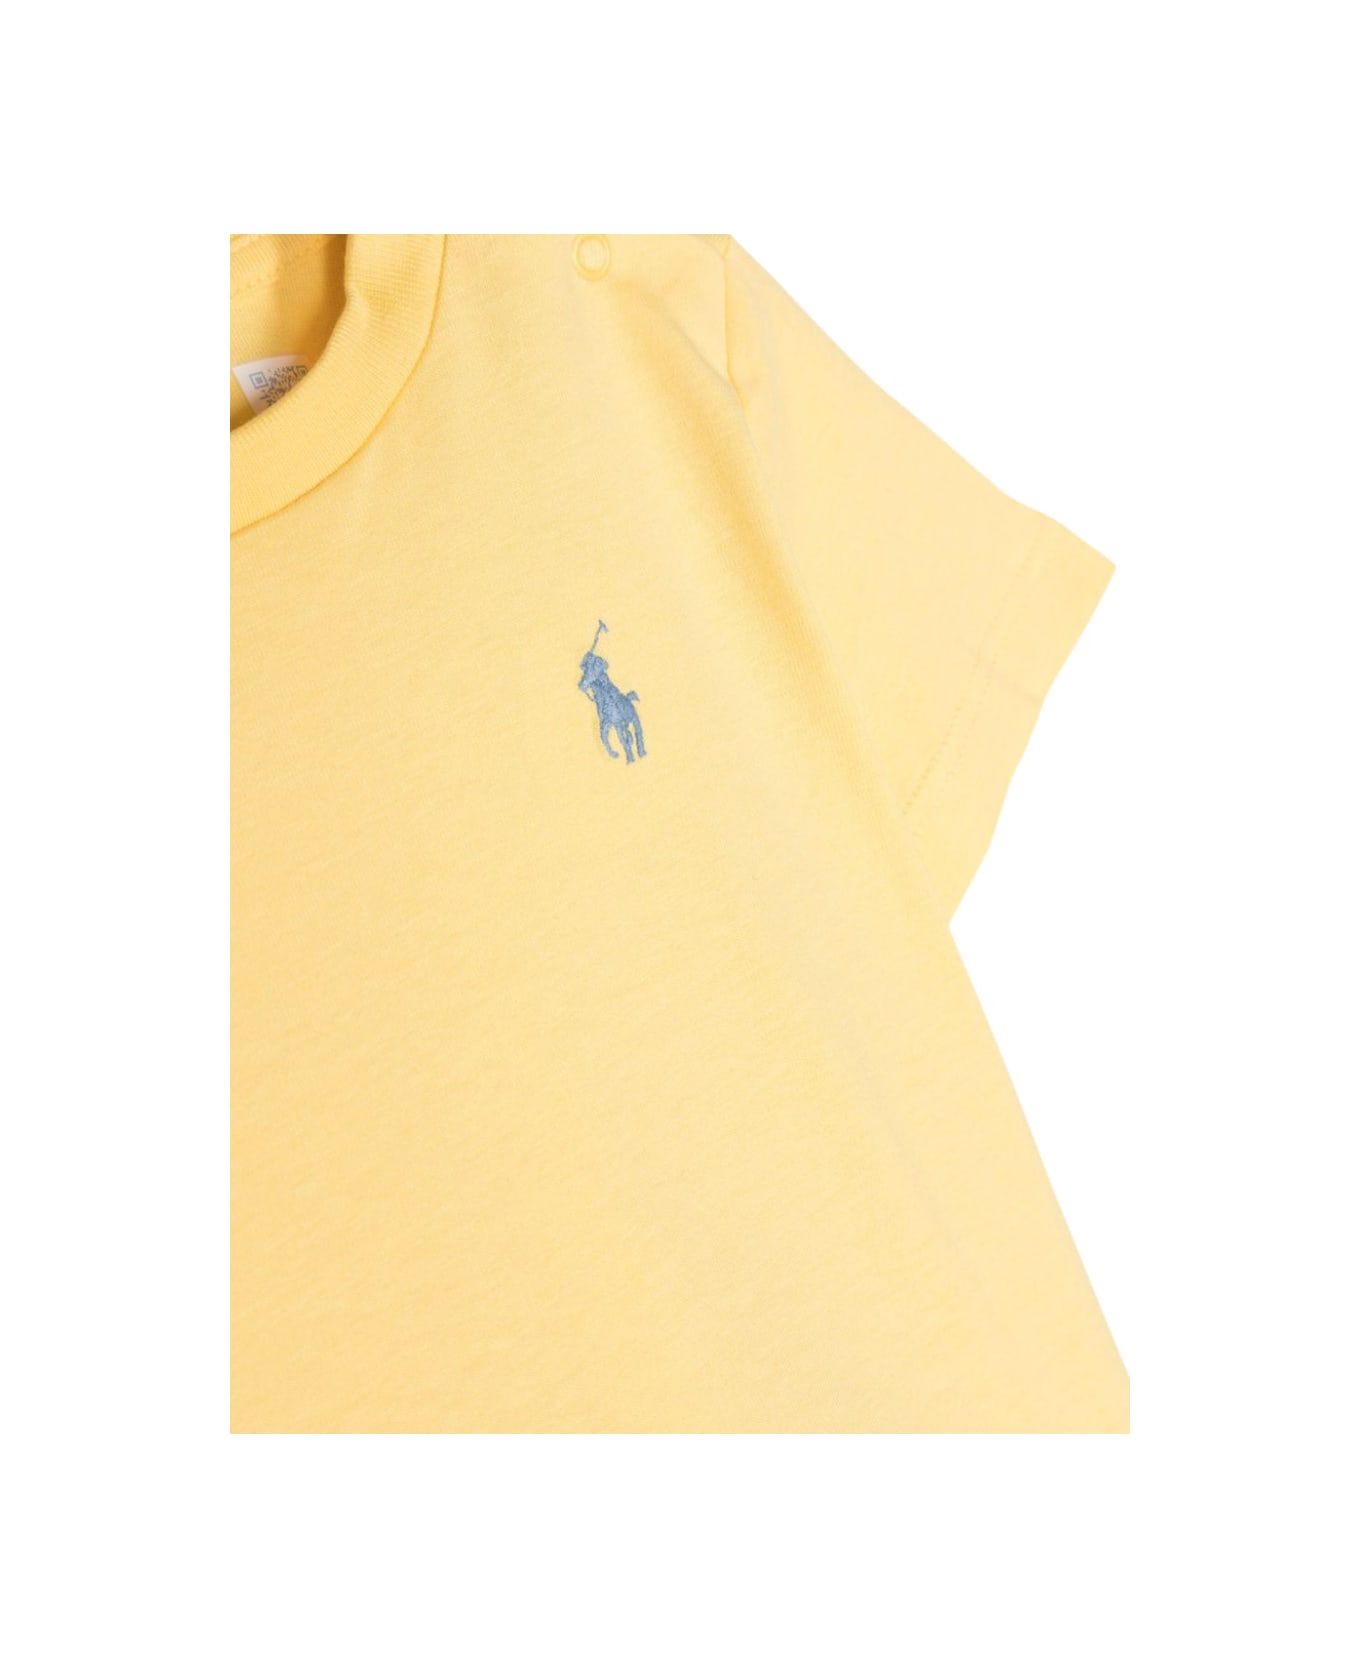 Polo Ralph Lauren Ss Cn-tops-t-shirt - YELLOW